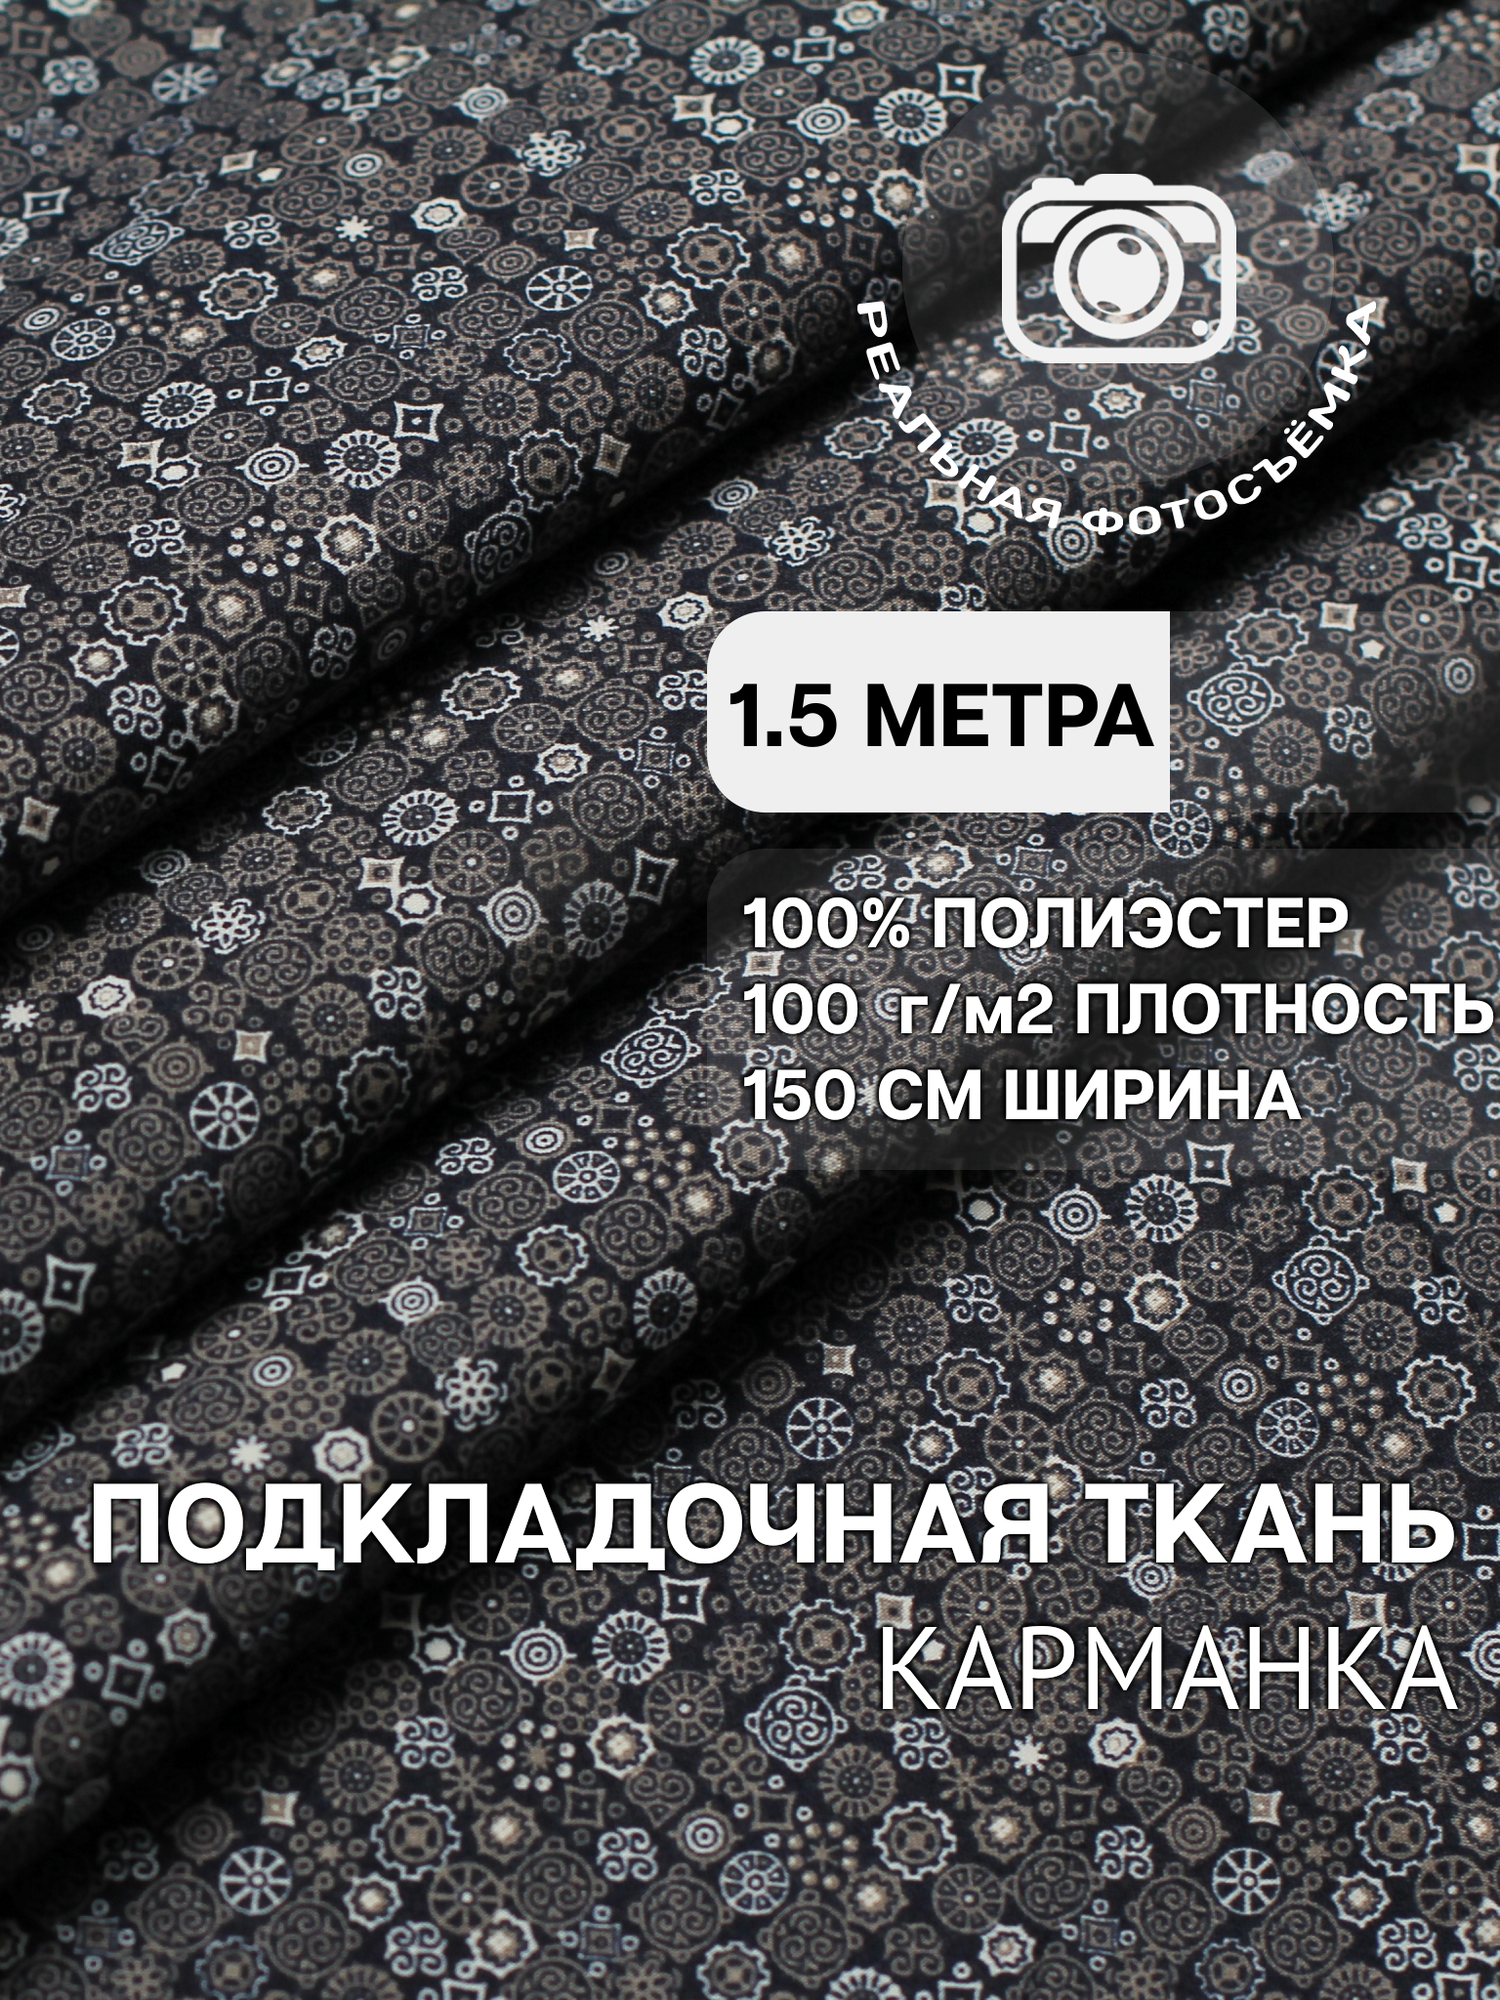 Ткань карманная подкладочная серо-синяя абстракция для одежды MDC FABRICS KPH100/531 для шитья. Полиэстер 100%. Отрез 1.5 метра